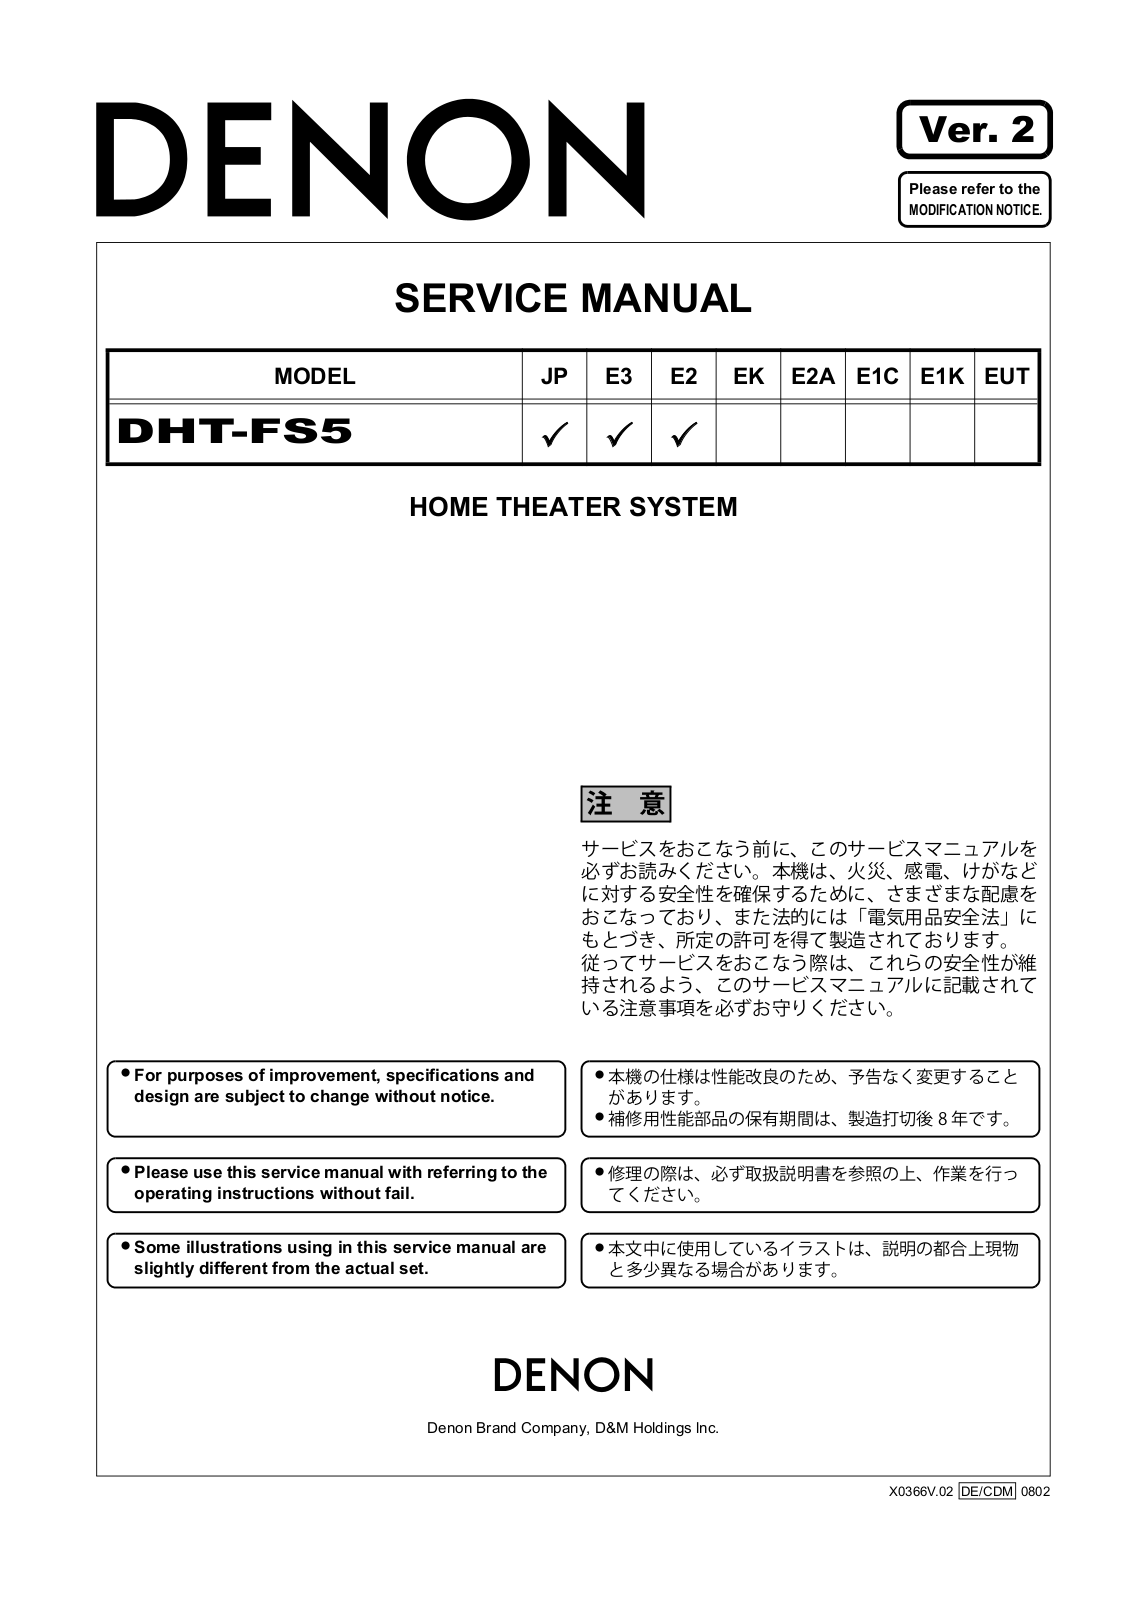 Denon DHT-FS5 Service Manual